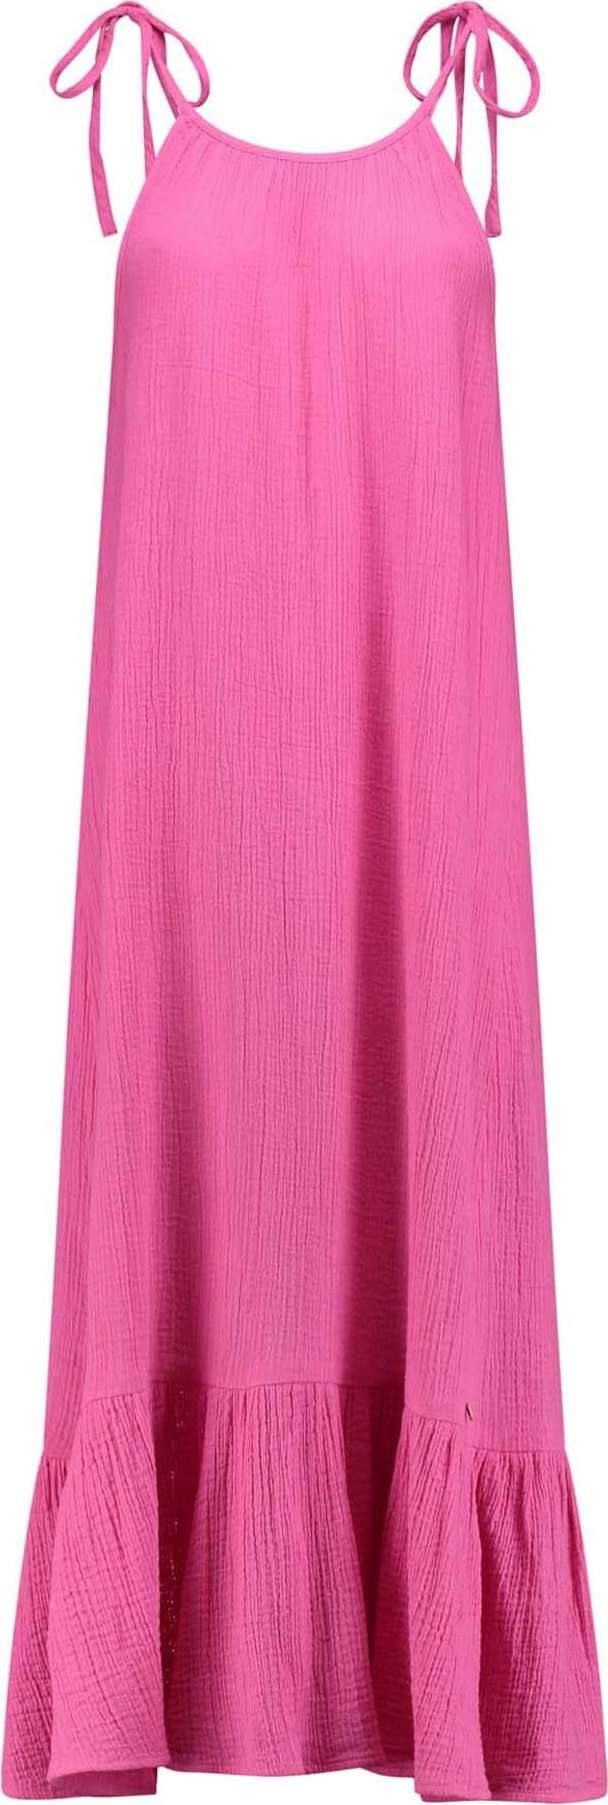 Shiwi Letní šaty 'Antibes' pink